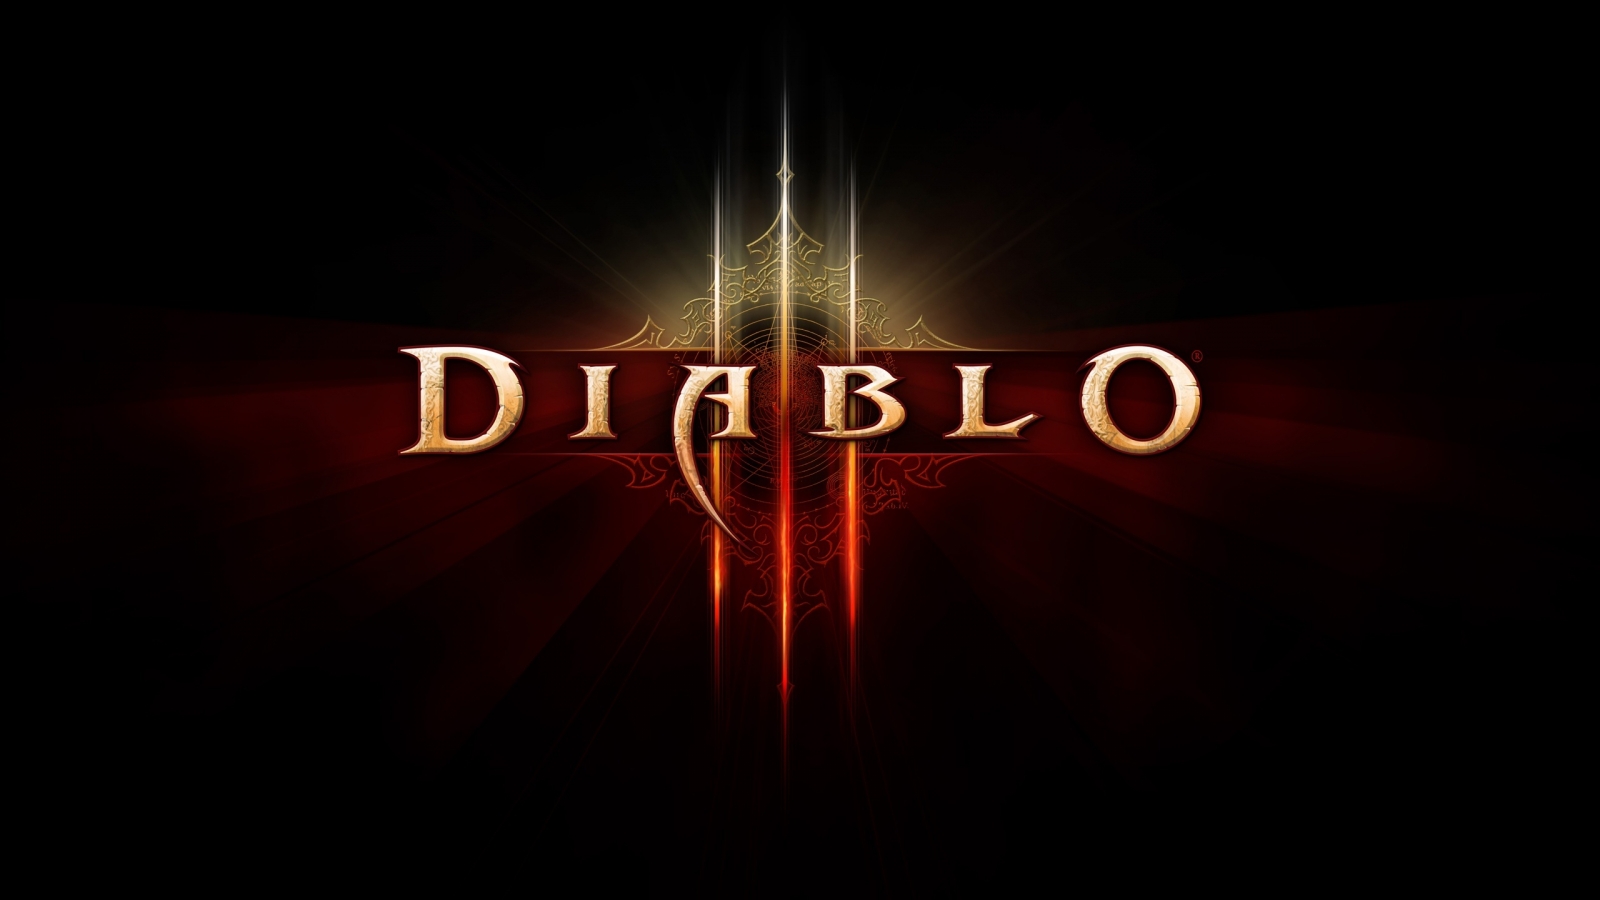 Diablo 3 Logo for 1600 x 900 HDTV resolution